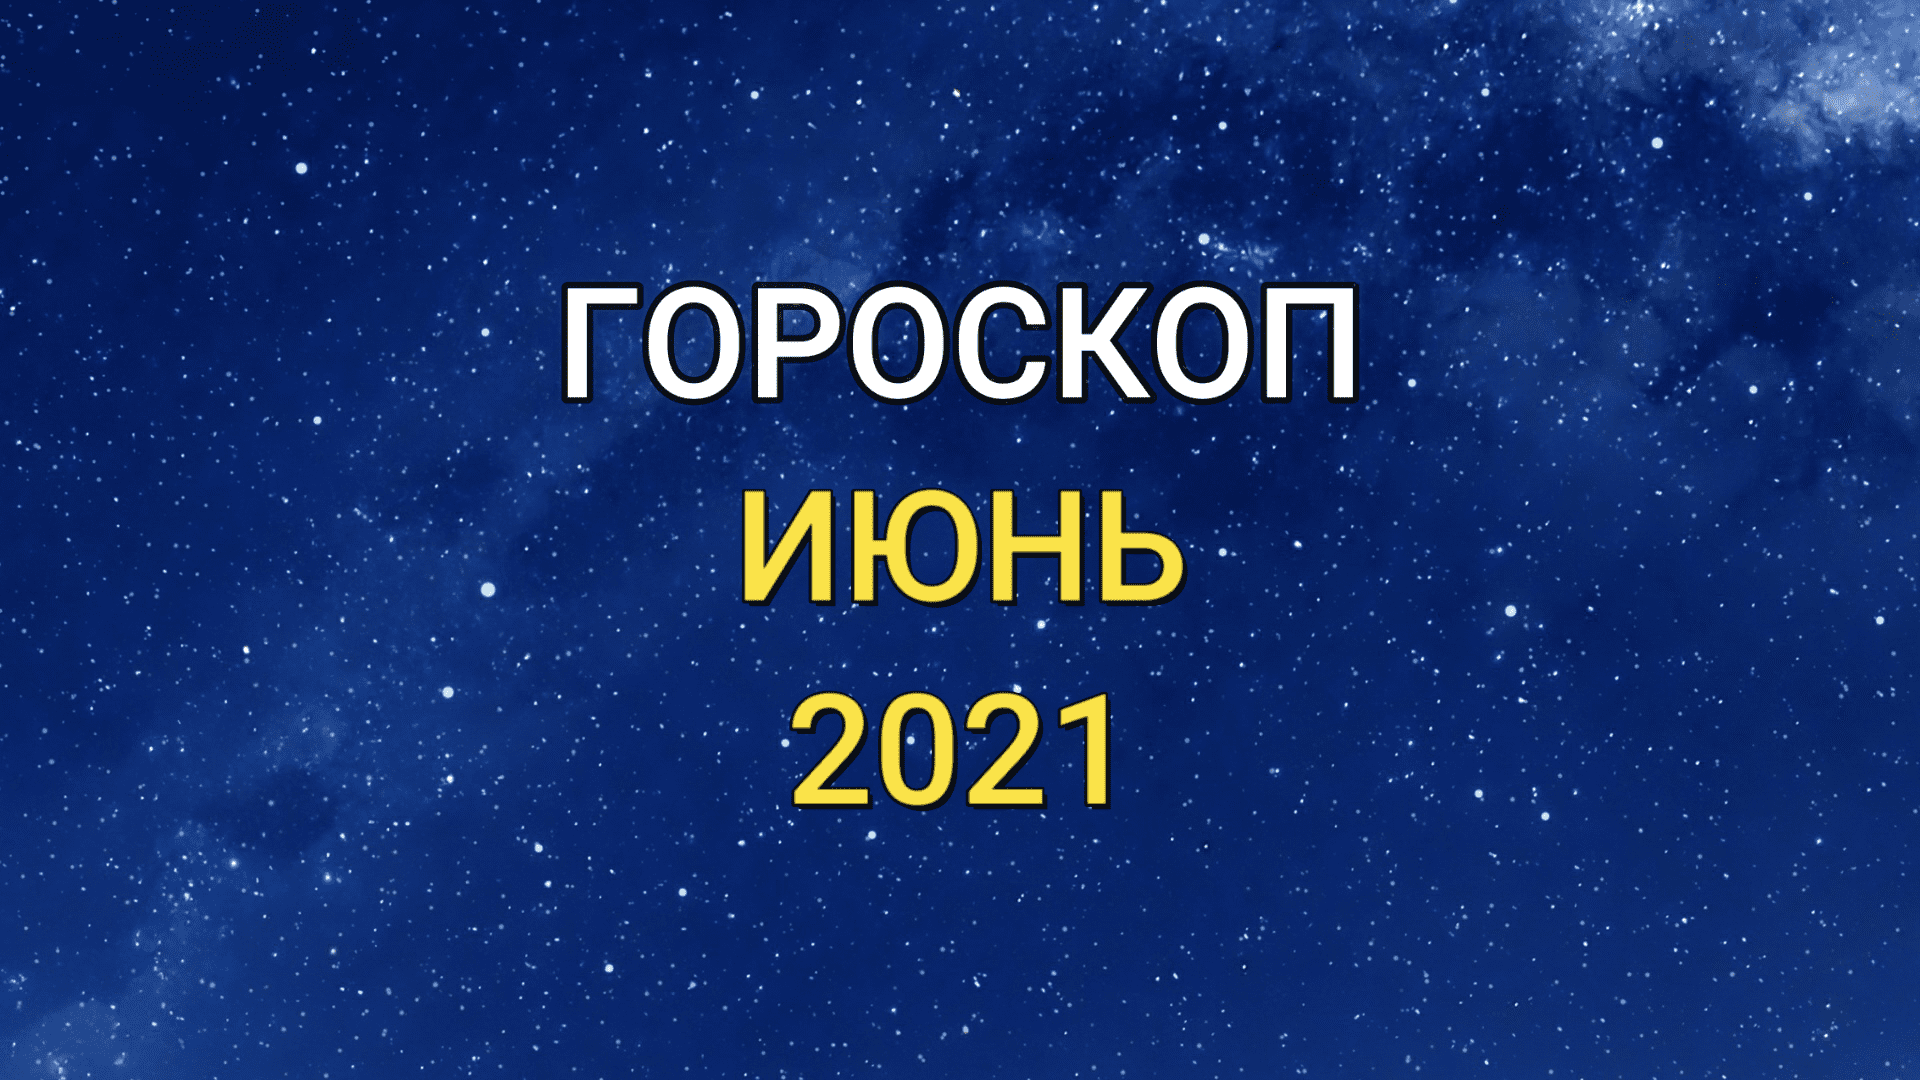 ГОРОСКОП на ИЮНЬ 2021 года для всех знаков Зодиака! Самый точный гороскоп на предстоящий месяц!